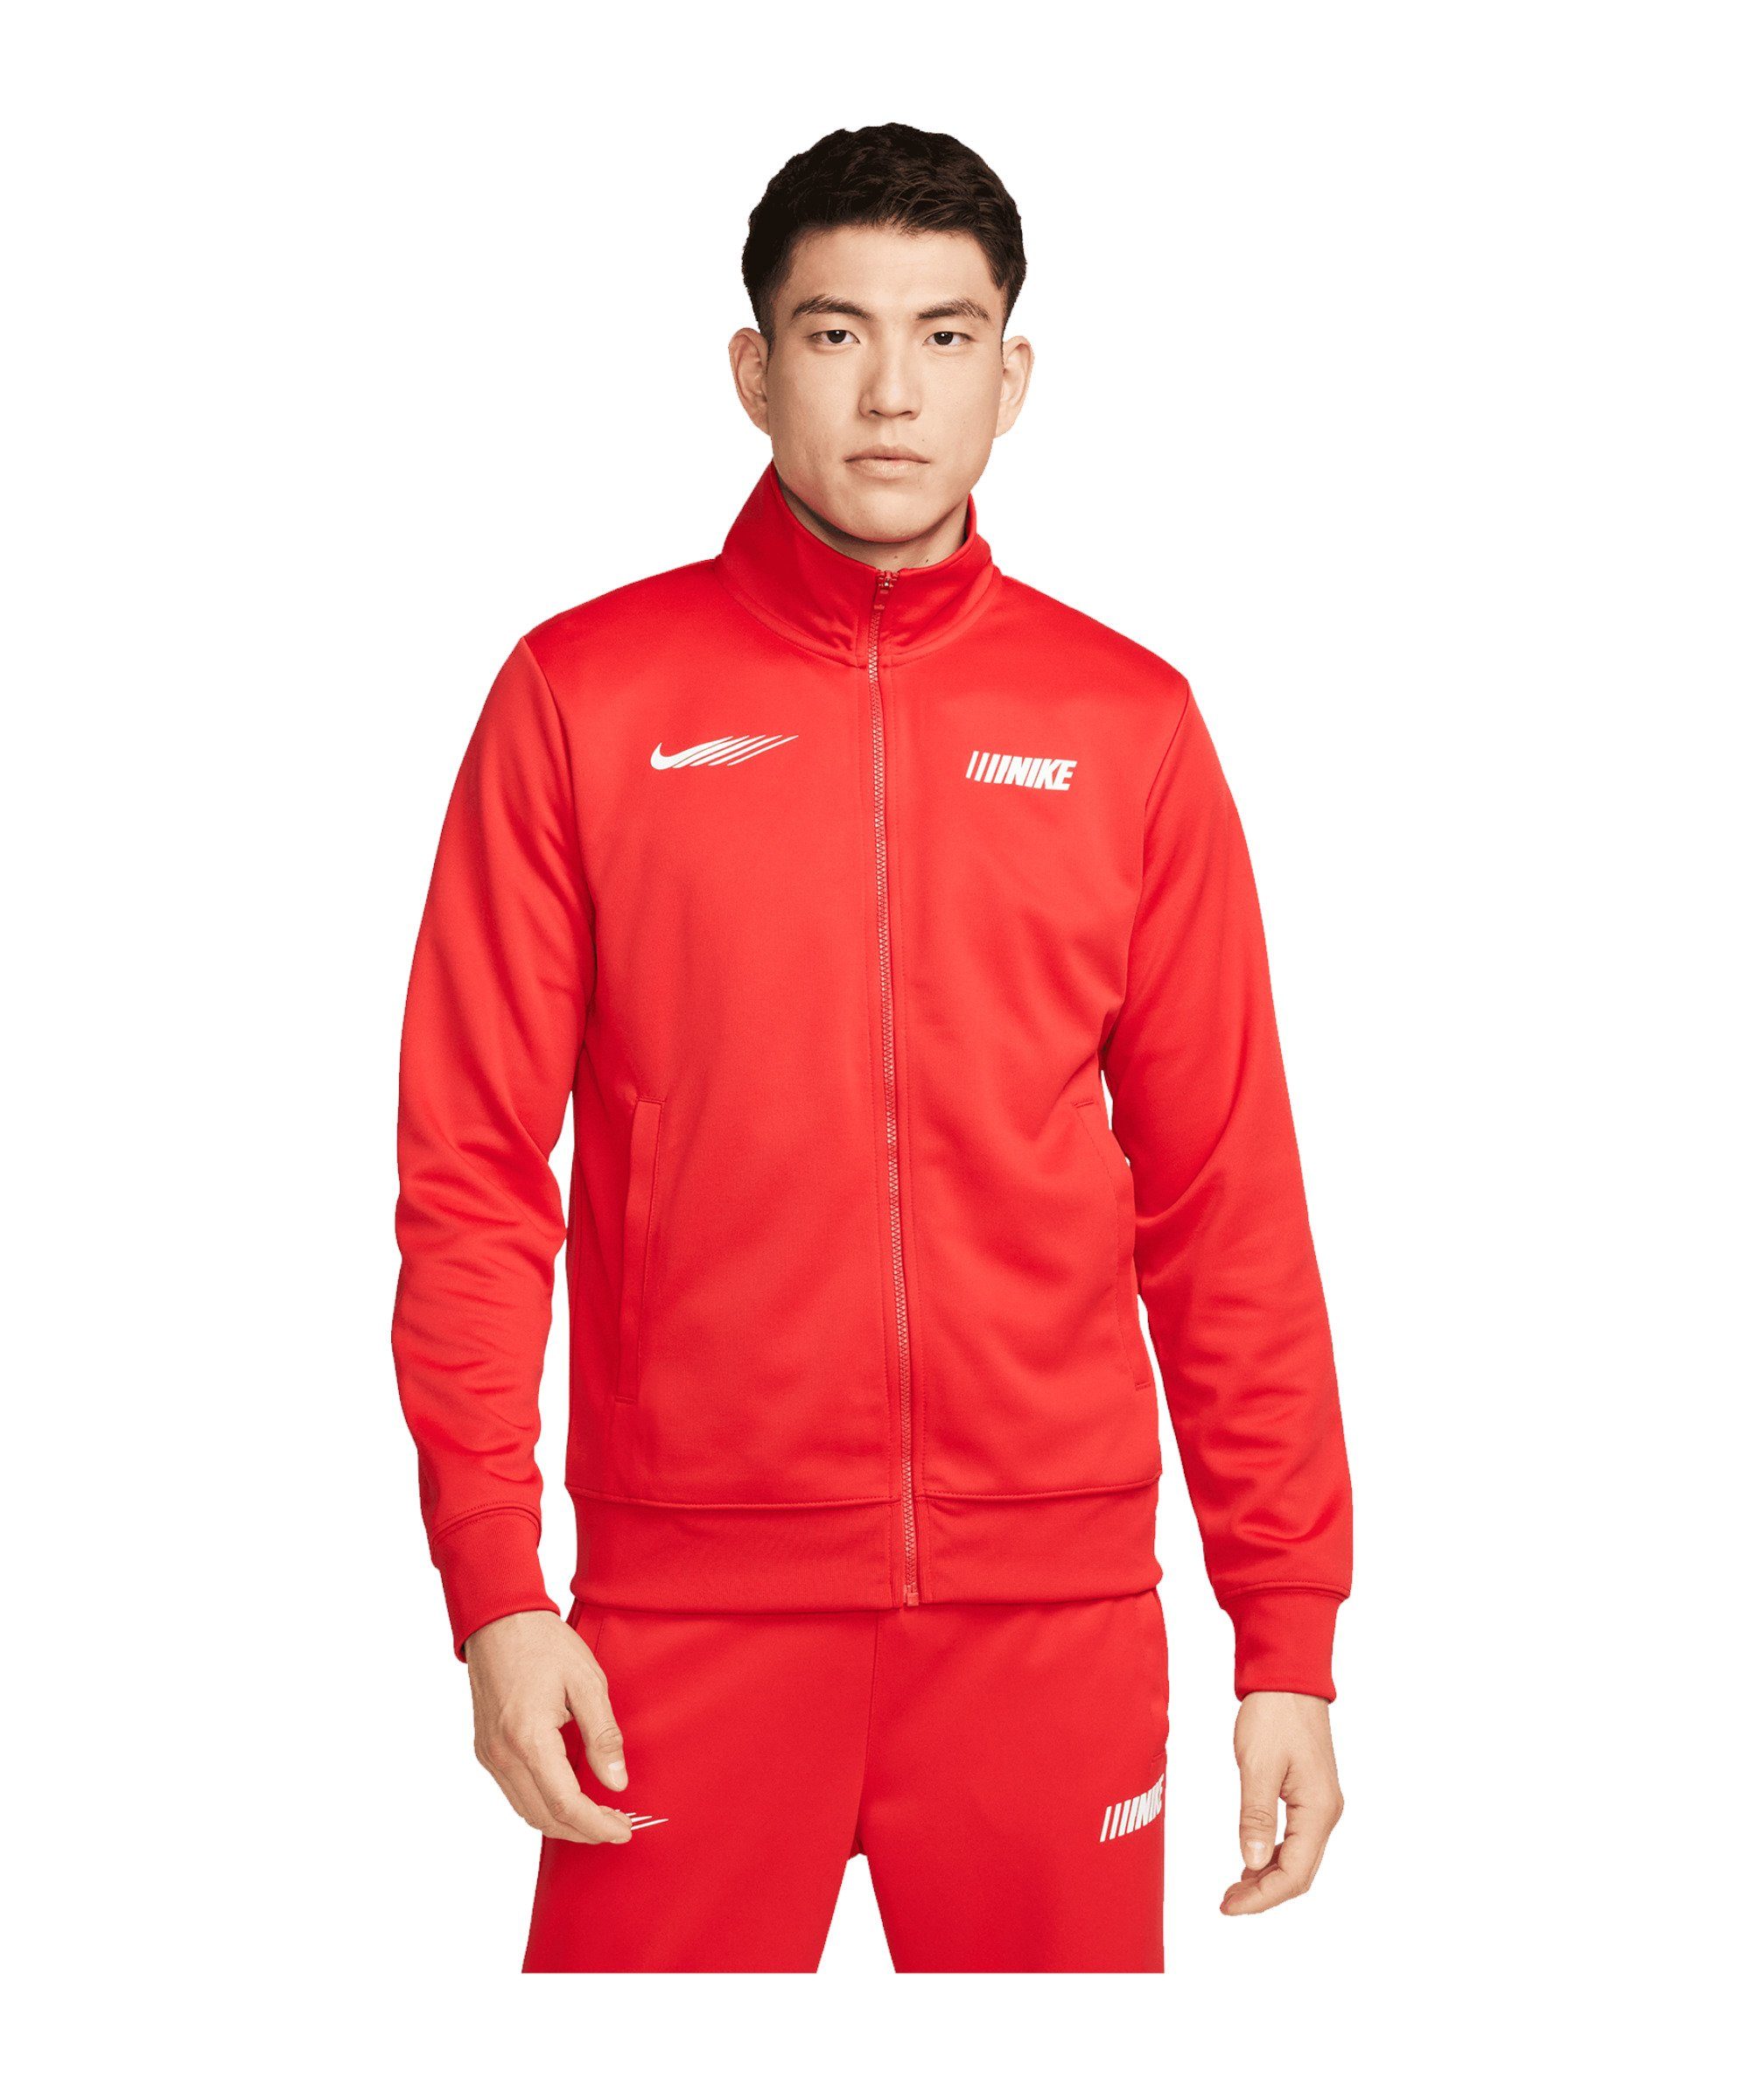 Nike Sportswear Sweatjacke Standart Issue rot Jacke